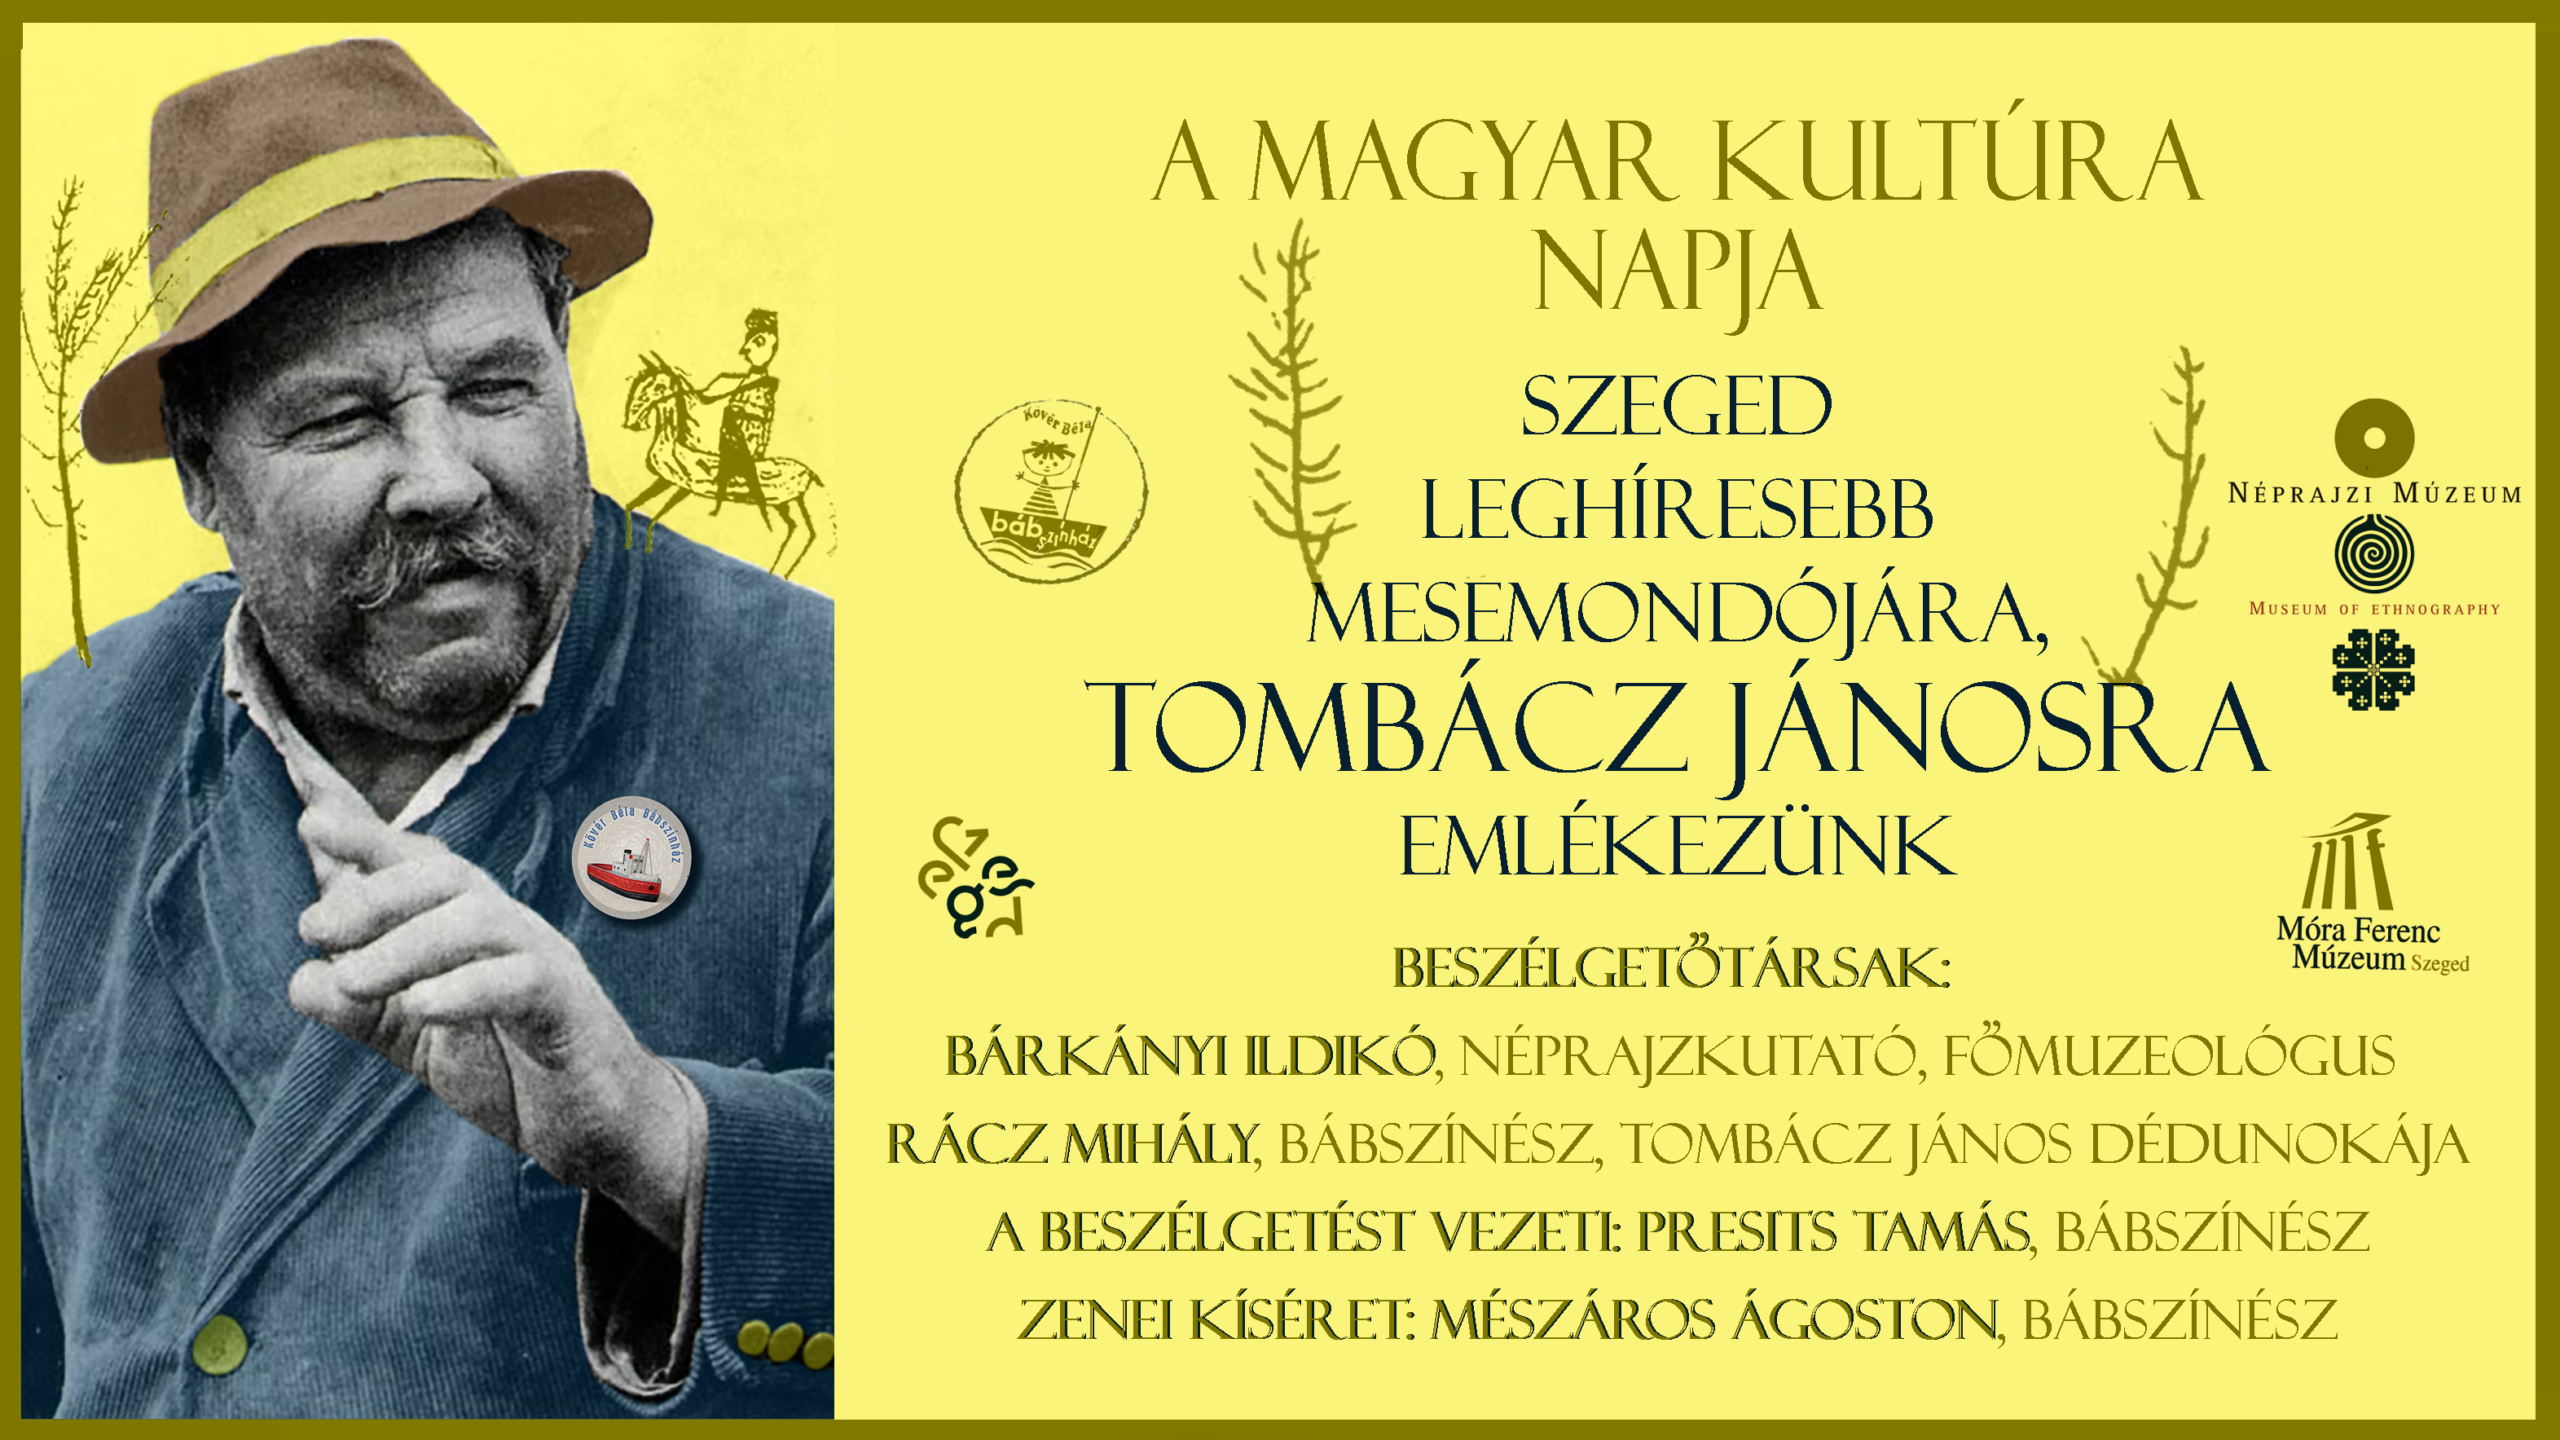 Január 22-én a Magyar Kultúra Napja alkalmából Szeged leghíresebb mesemondójára emlékezünk.